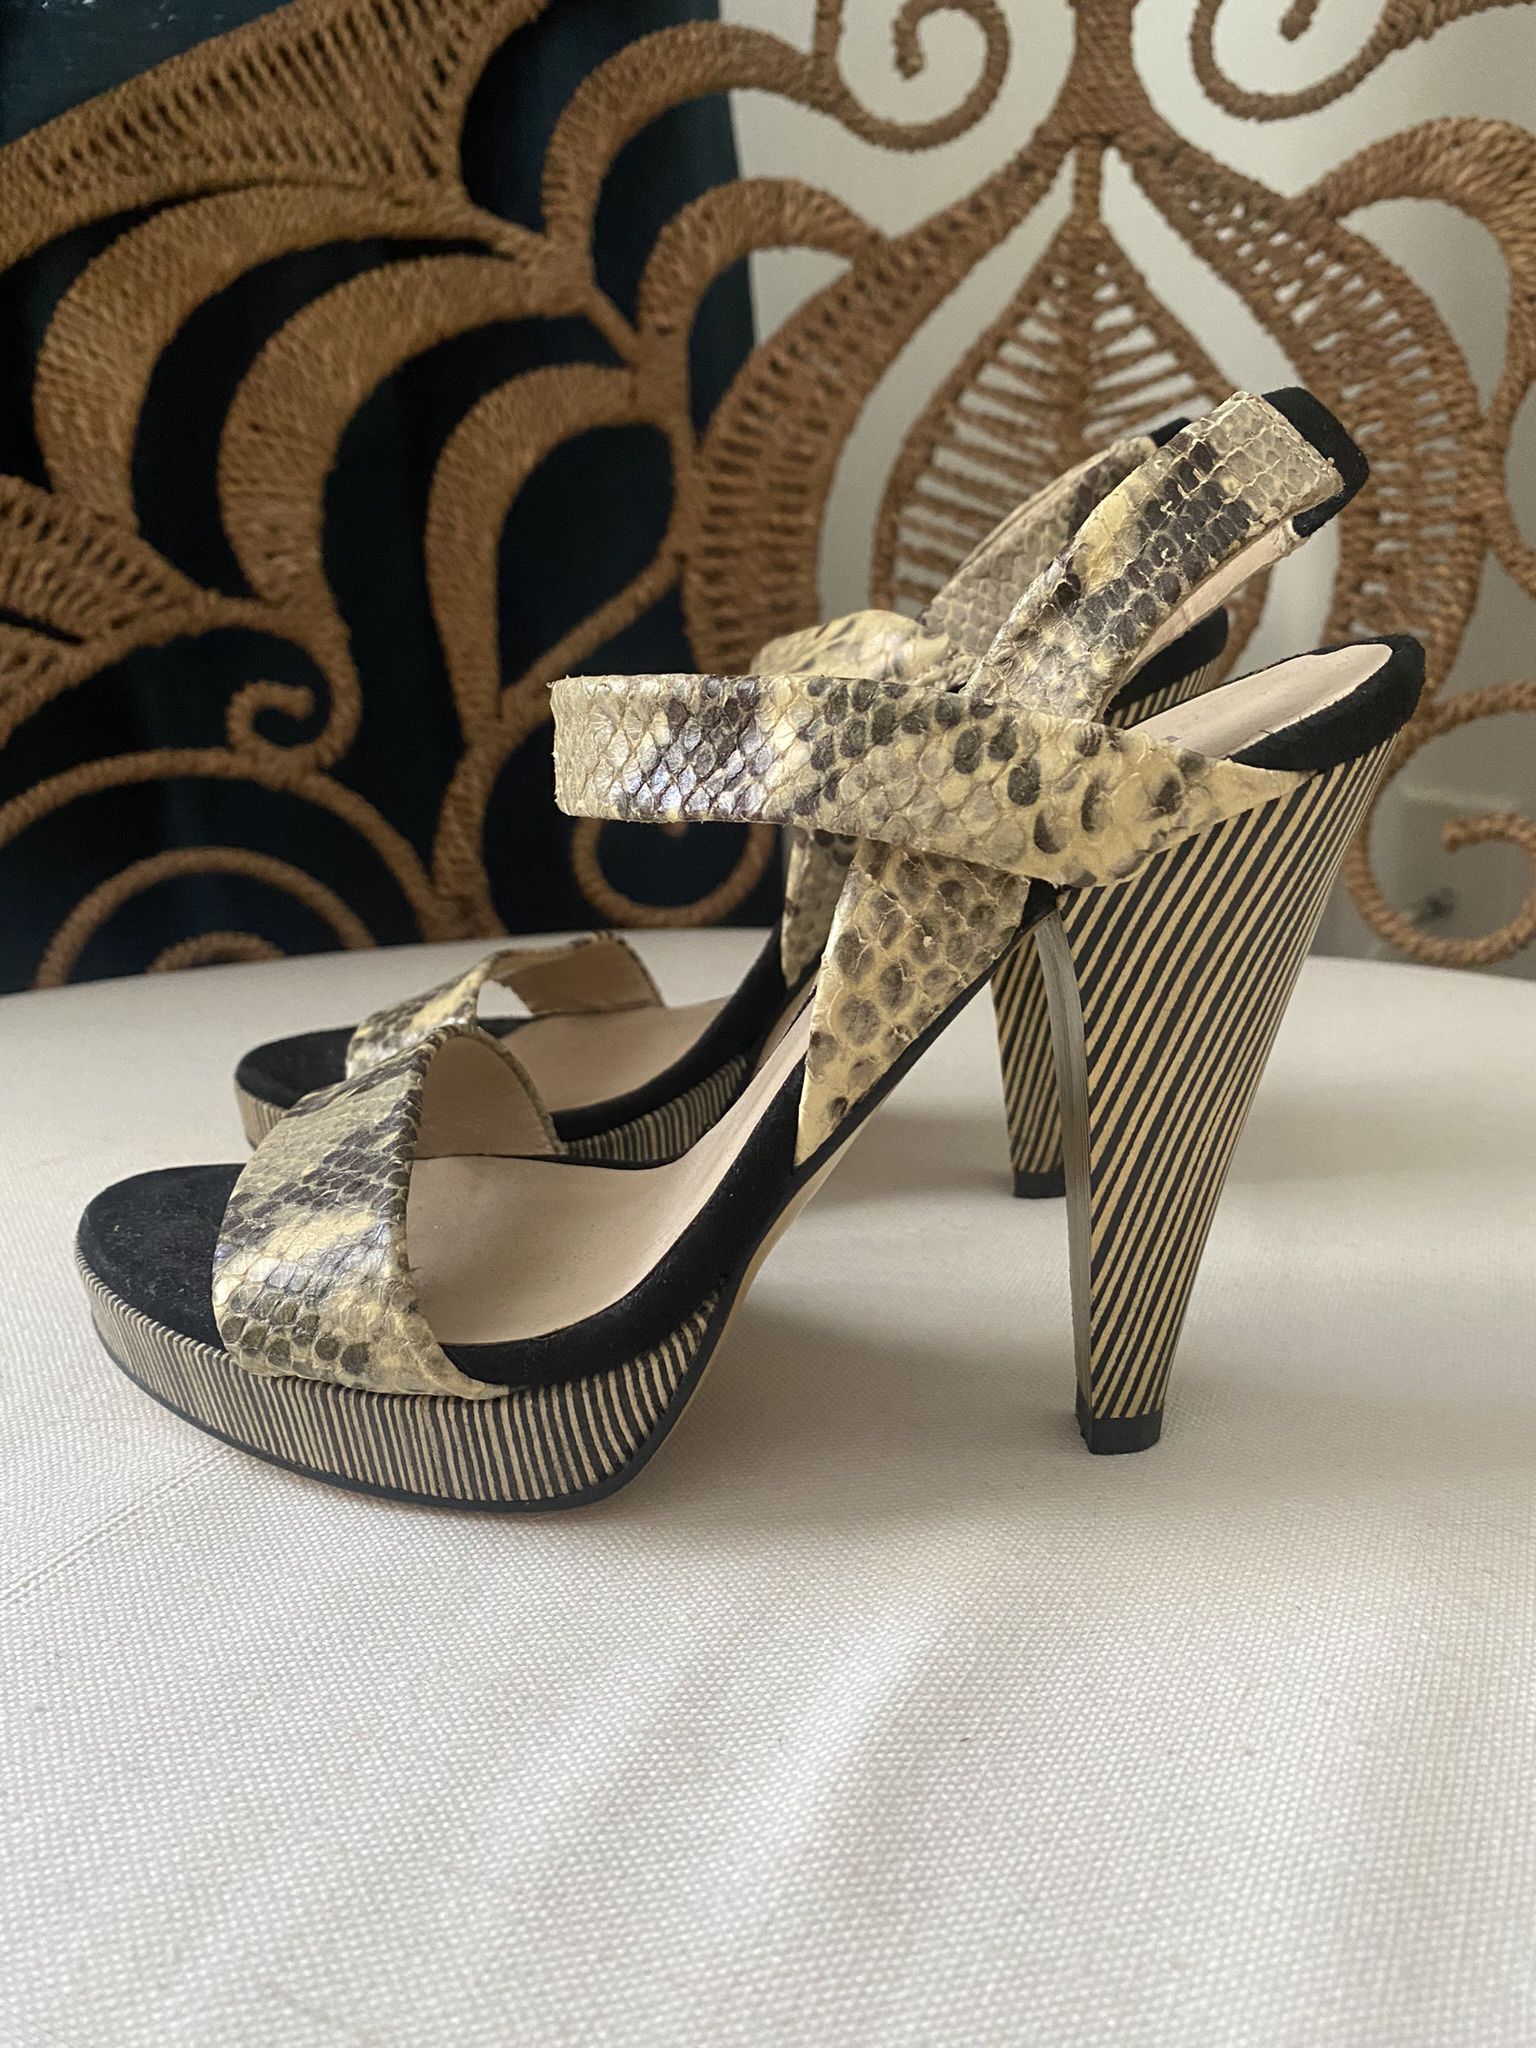 MINELLI PARIS Striped Heels Suede + Leather Shoes Sz 35/5